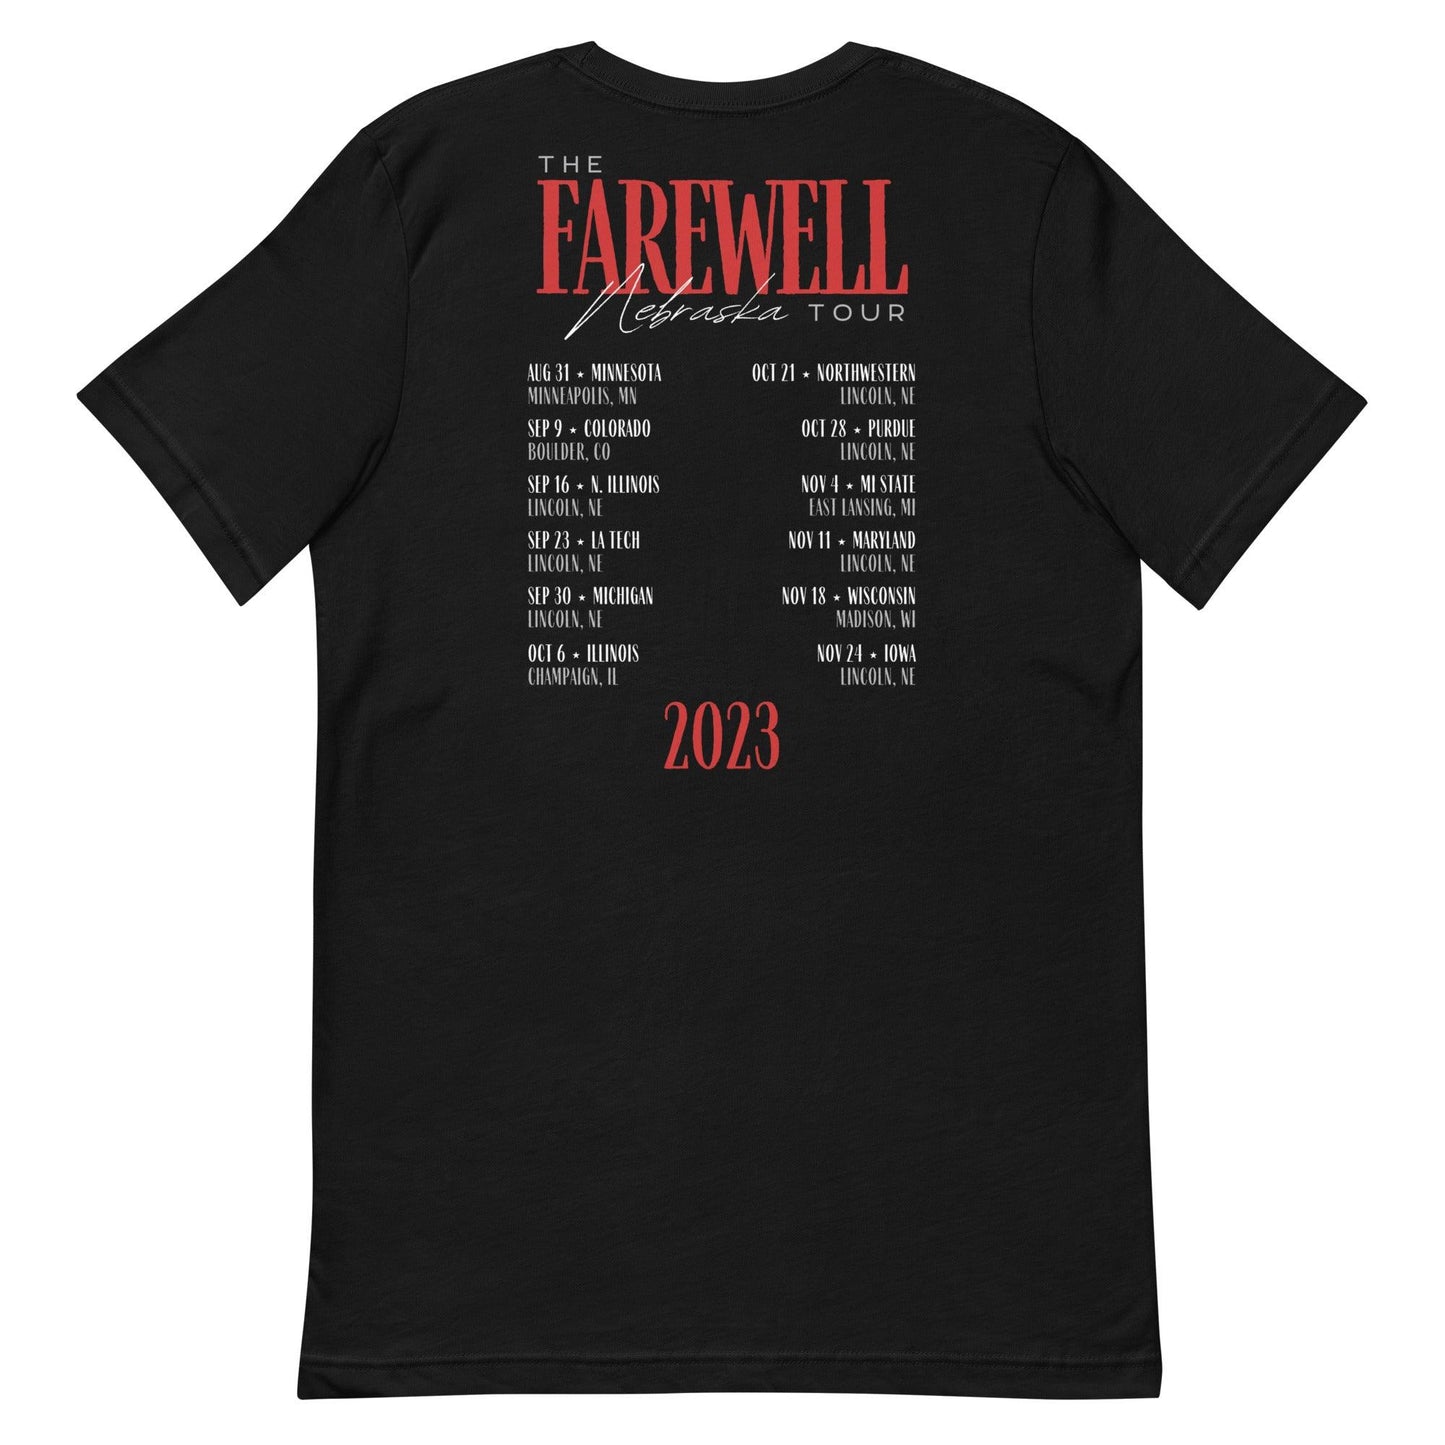 Luke Reimer "Farewell Tour" t-shirt - Fan Arch